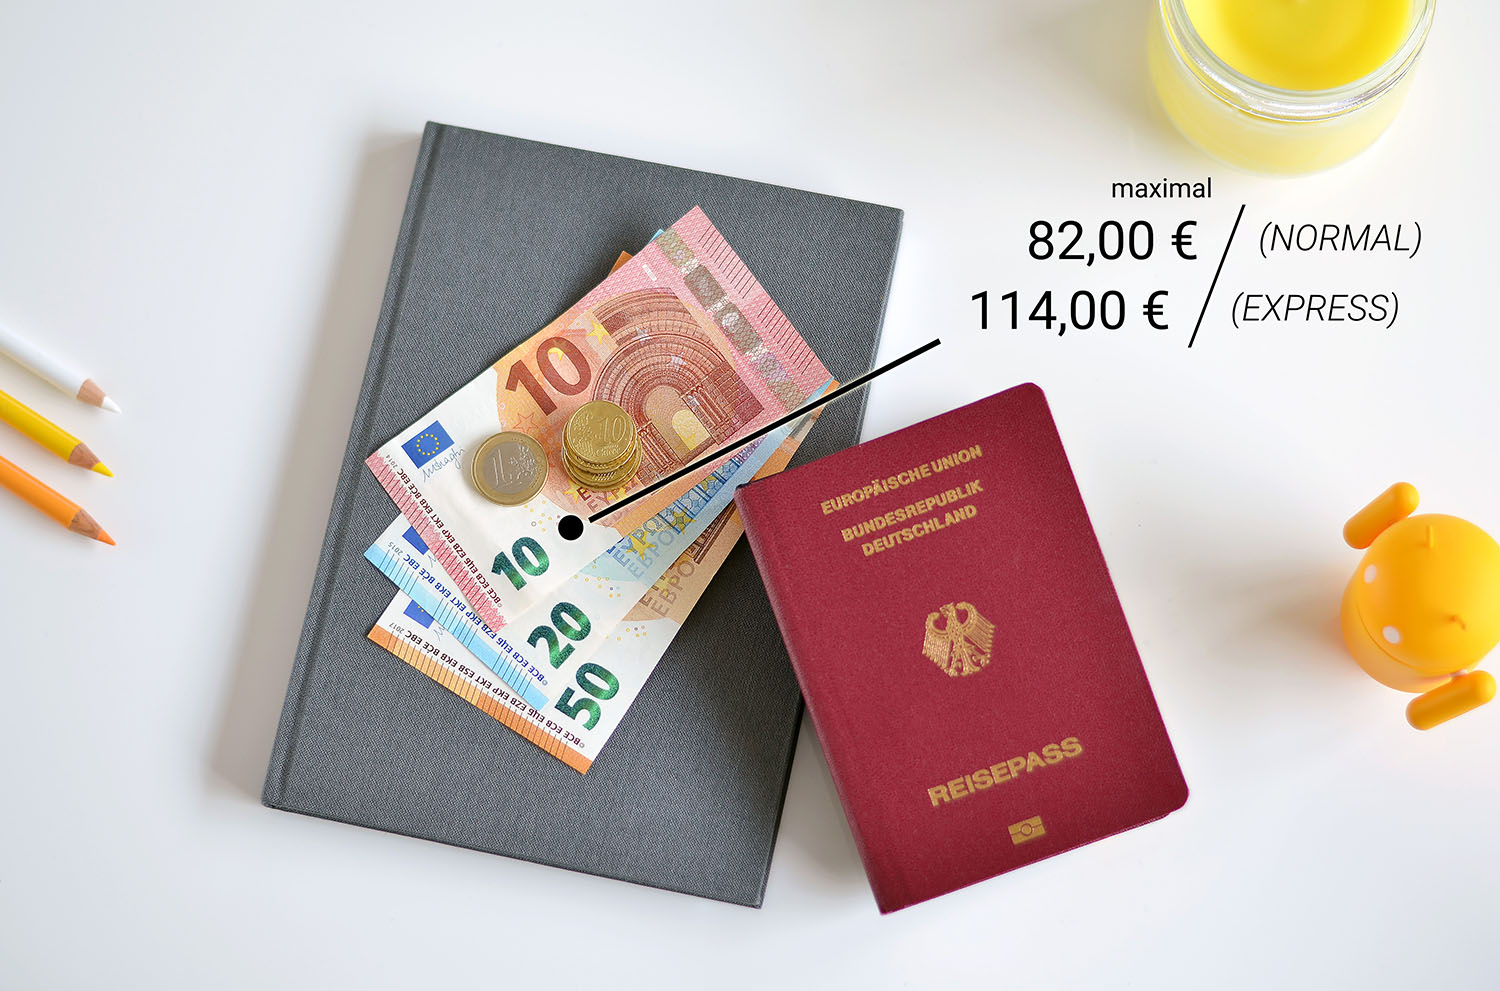 Reisepass › Kosten - Alle Varianten & Gebühren im Überblick